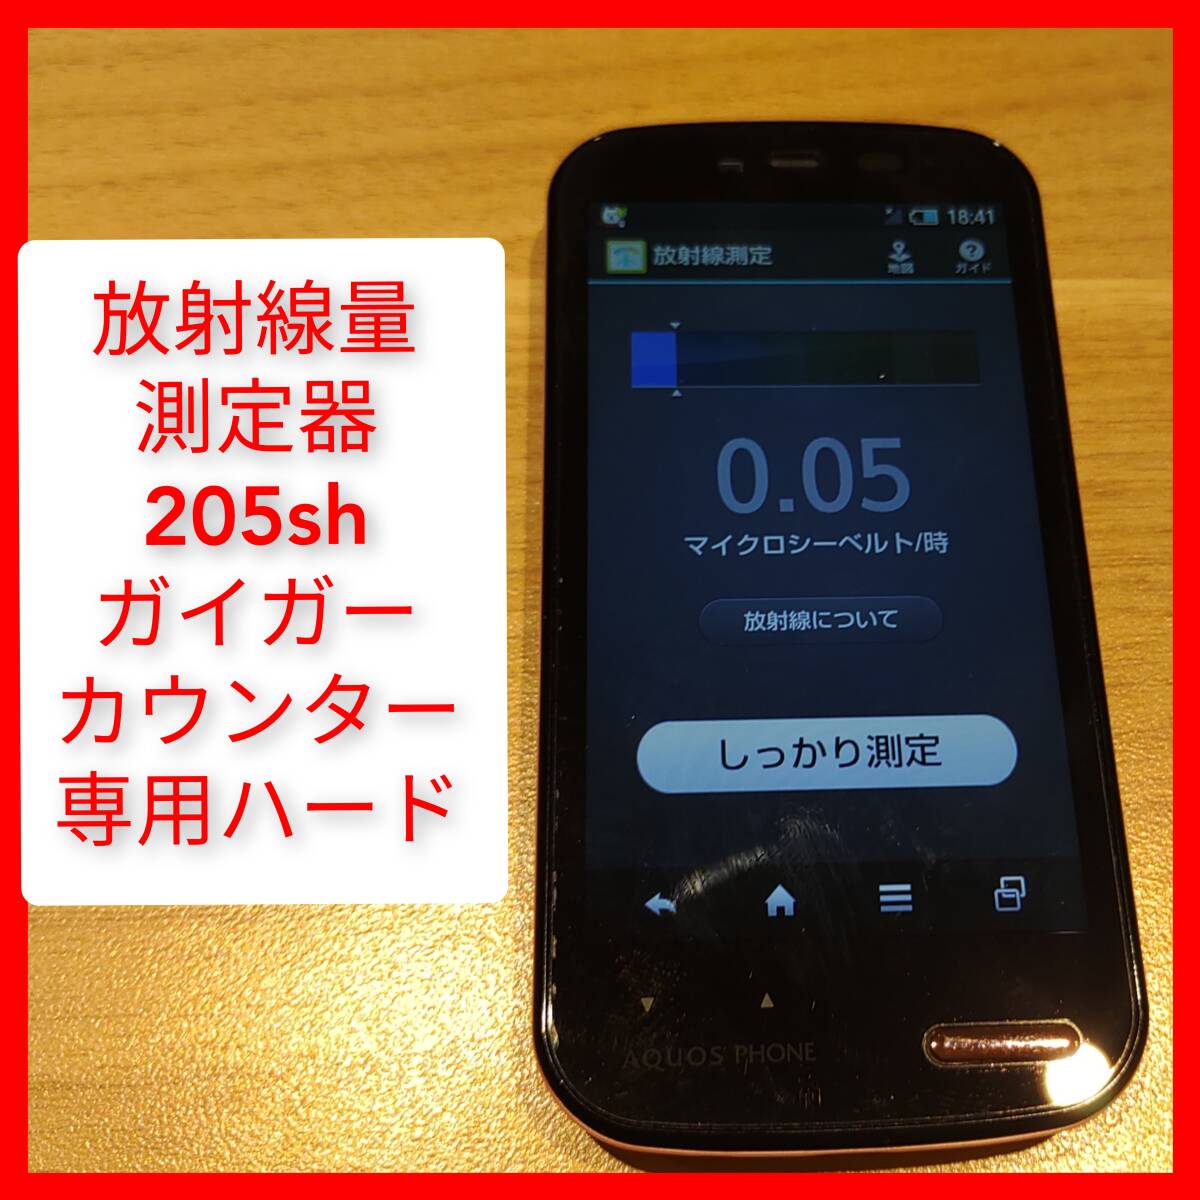 放射線測定機能付きスマートフォン 205sh SoftBank ガイガーカウンター ワンセグ マイクロシーベルト_画像1